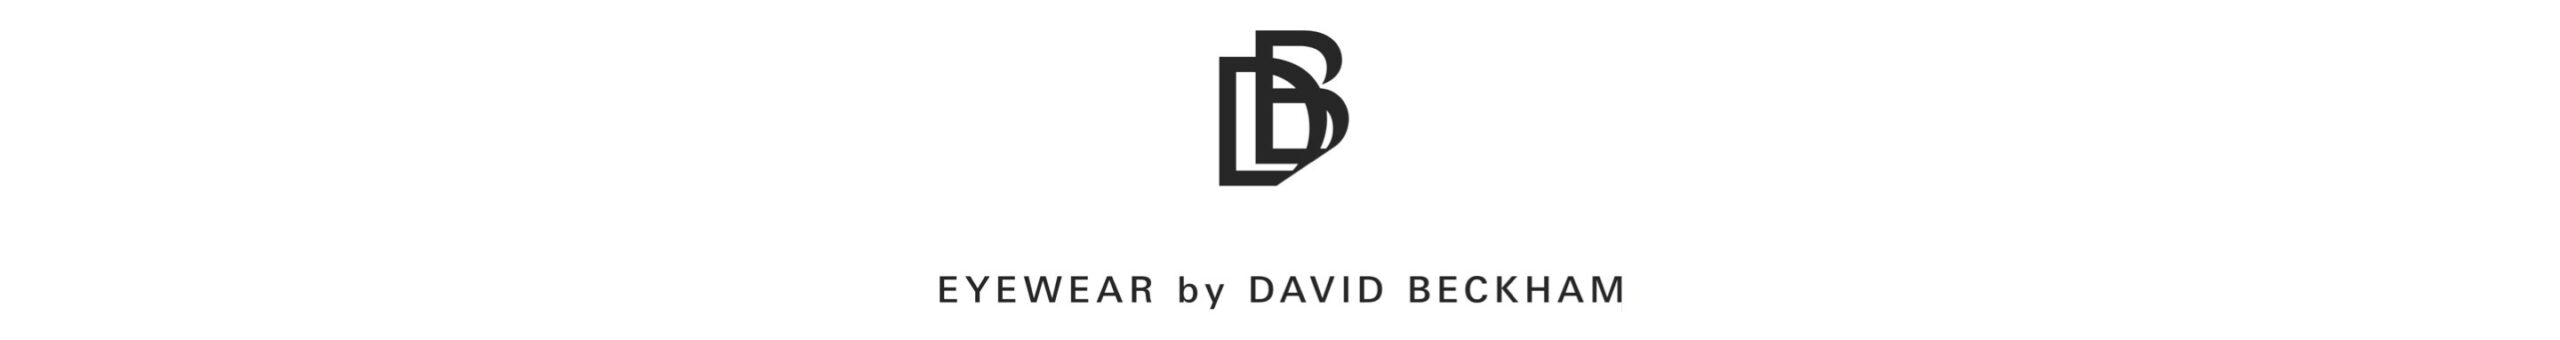 david_beckham_logo